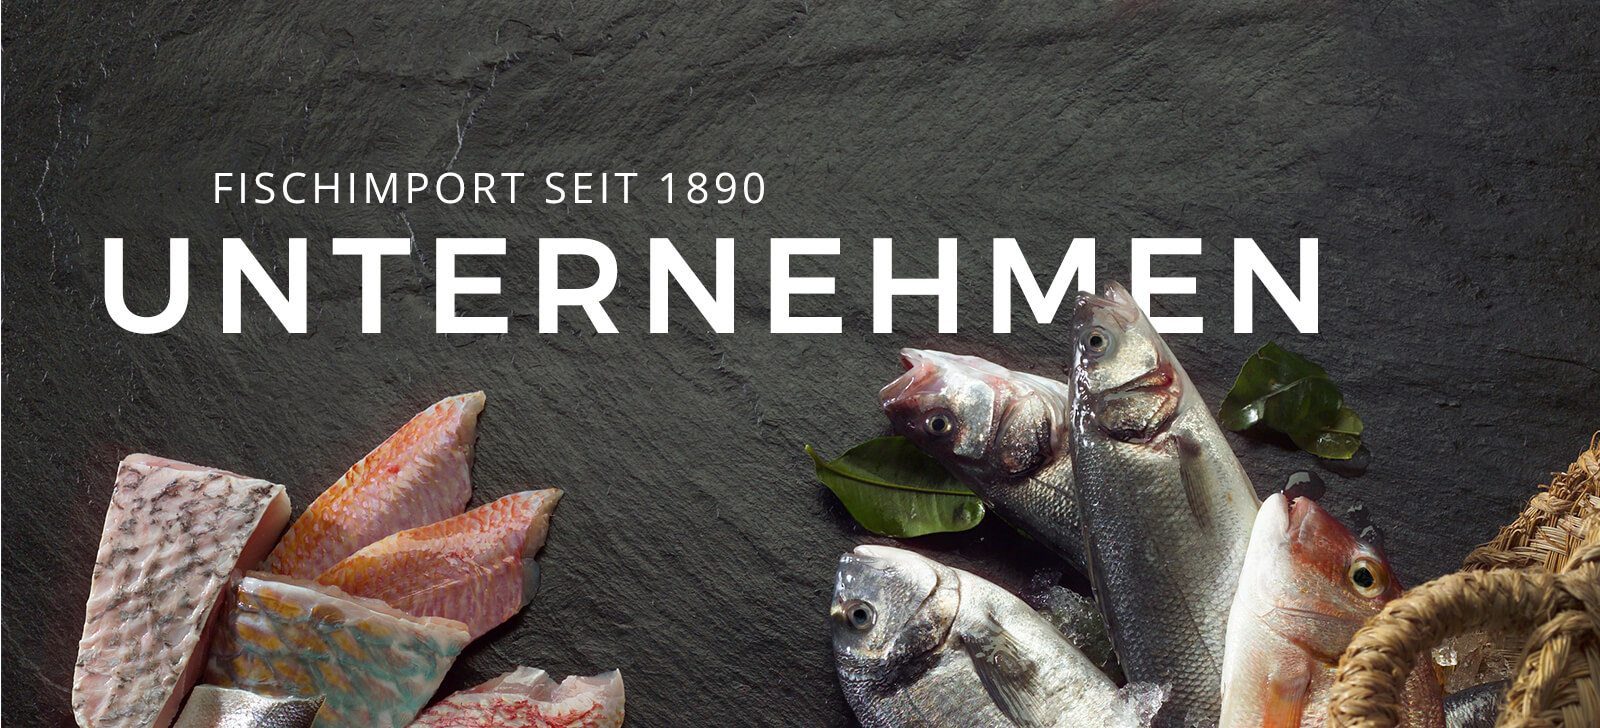 Fischimport seit 1890 - Unternehmen